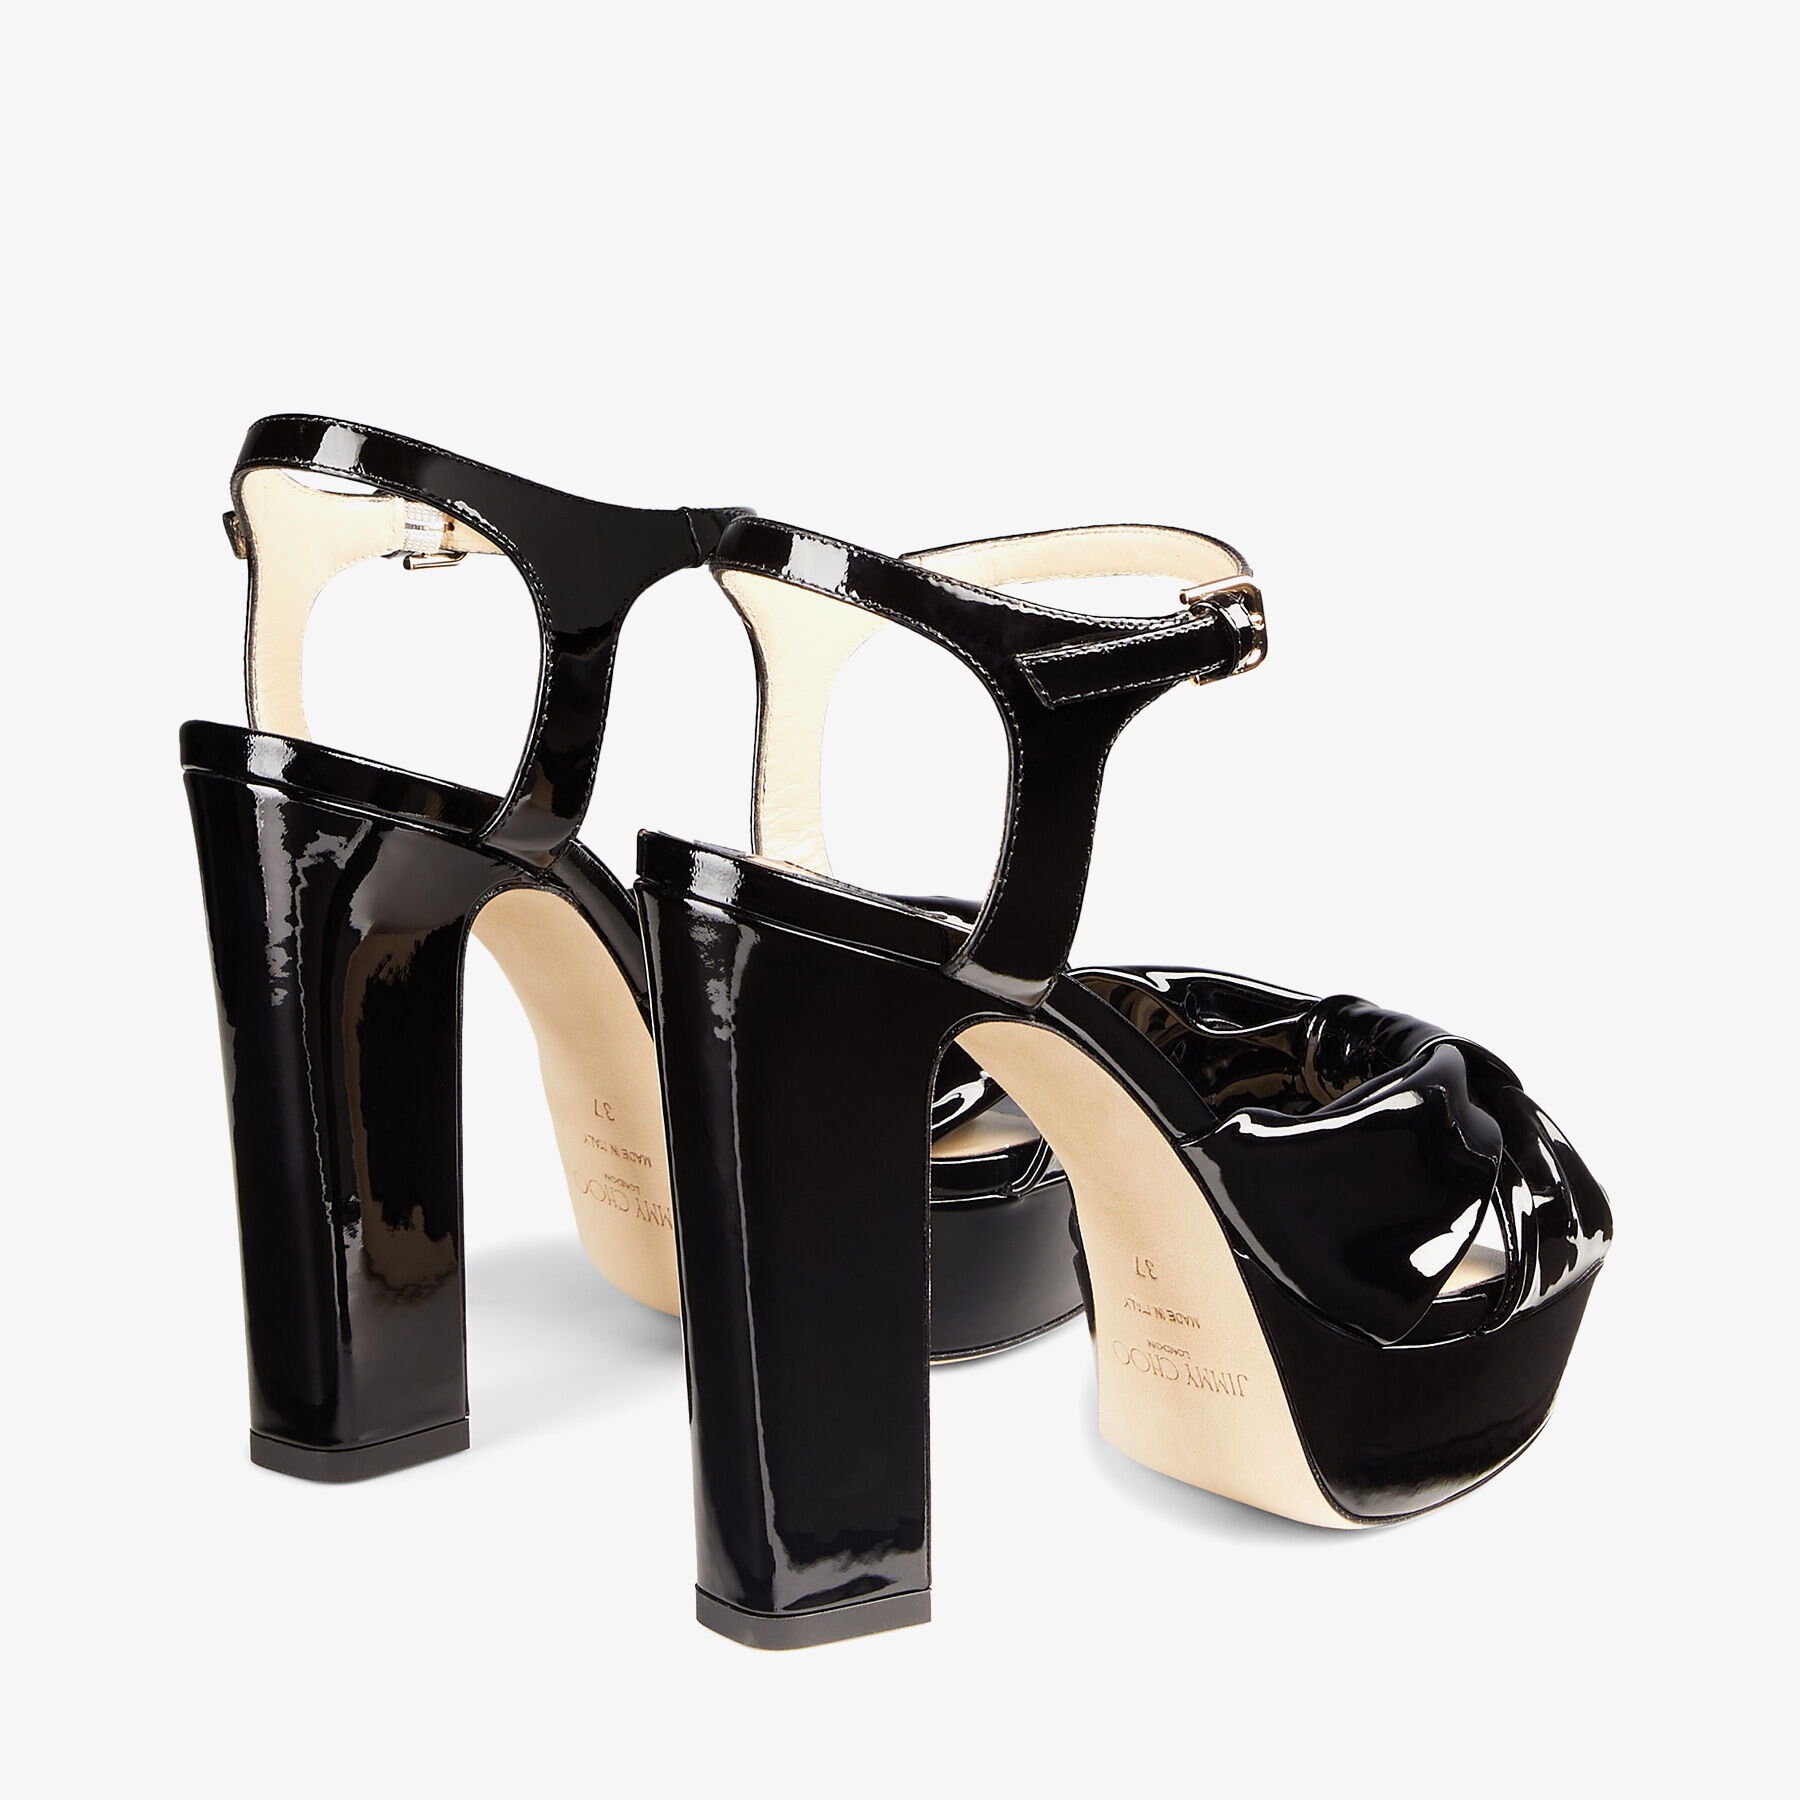 Heloise 120
Black Soft Patent Platform Sandals - 6